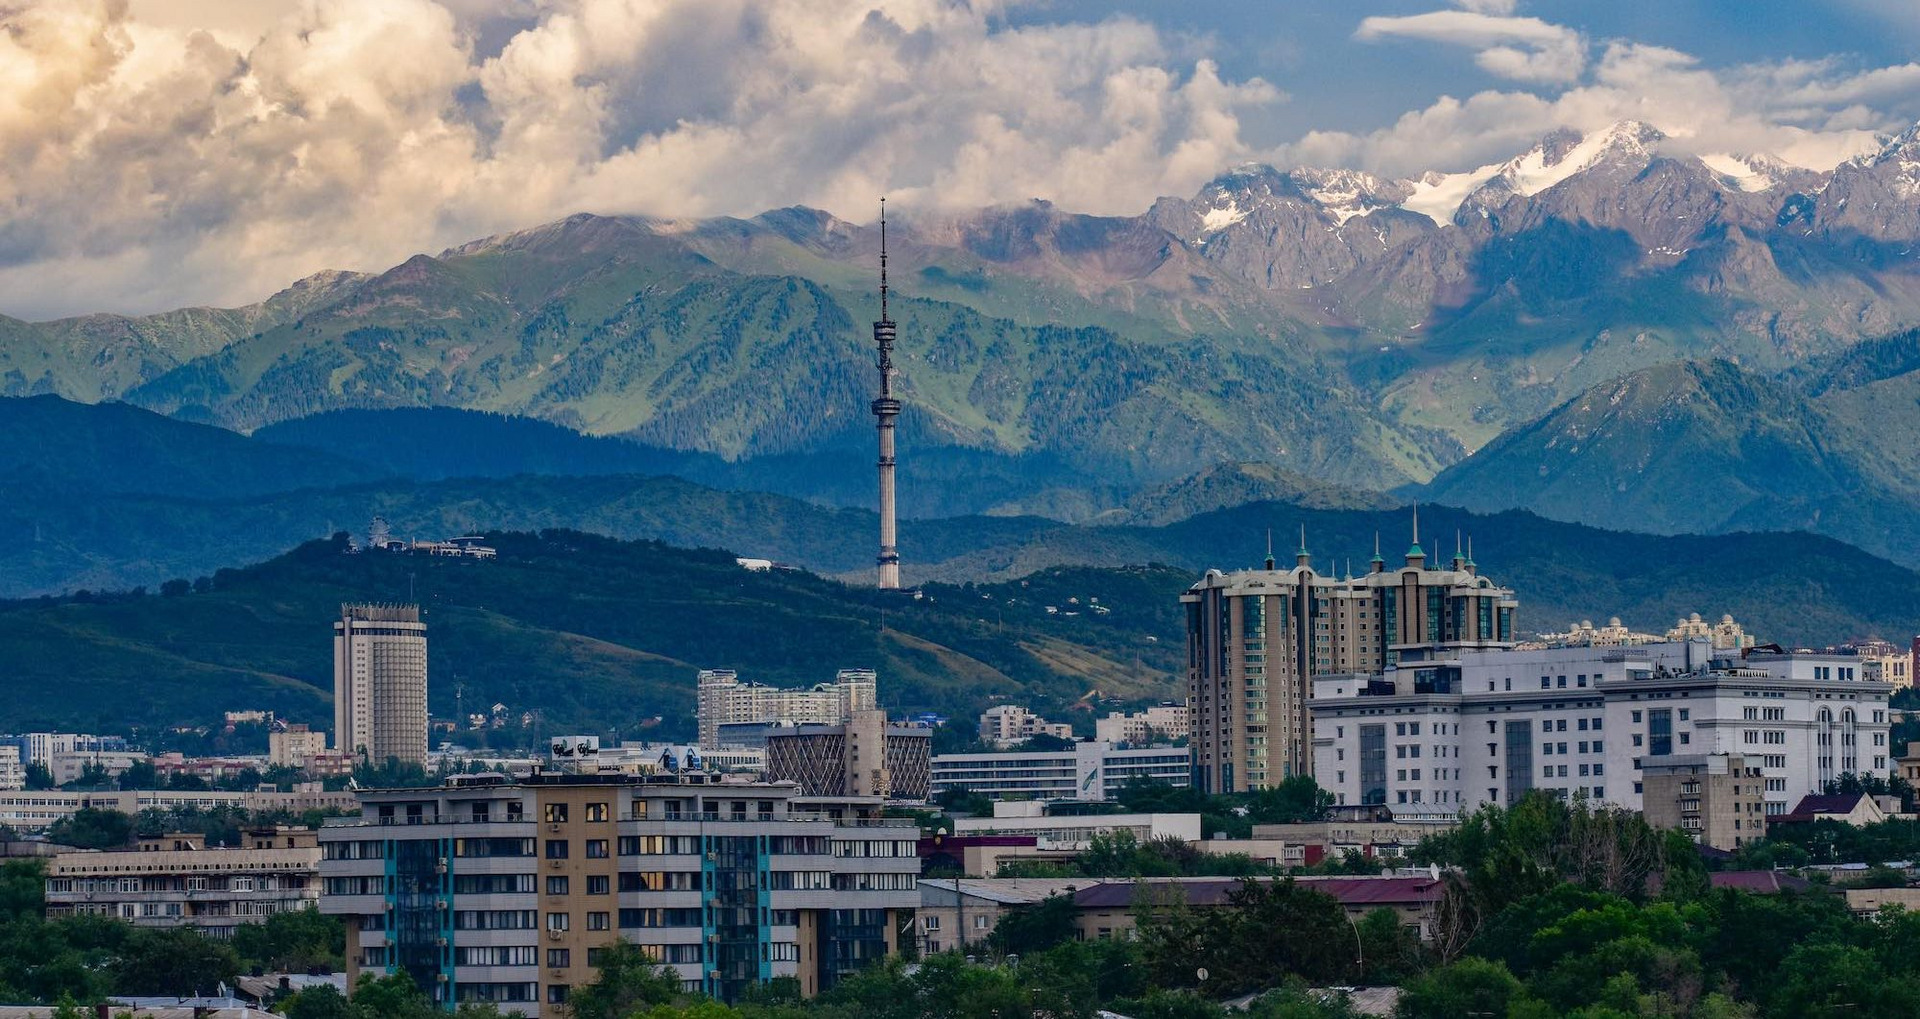 Stadt in Kasachstan mit Fernsehturm vor Berglandschaft